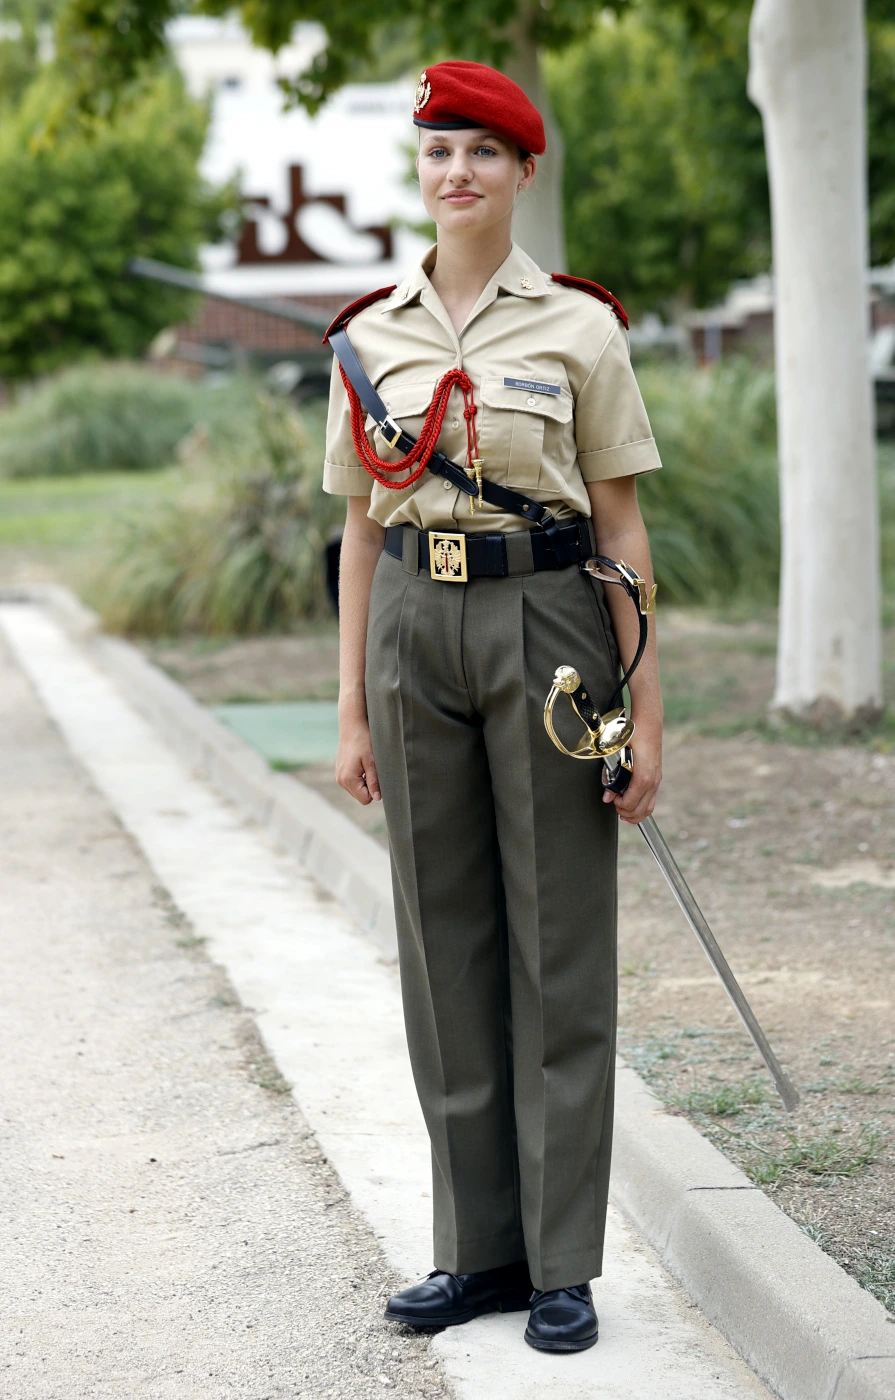 Leonor in Uniform